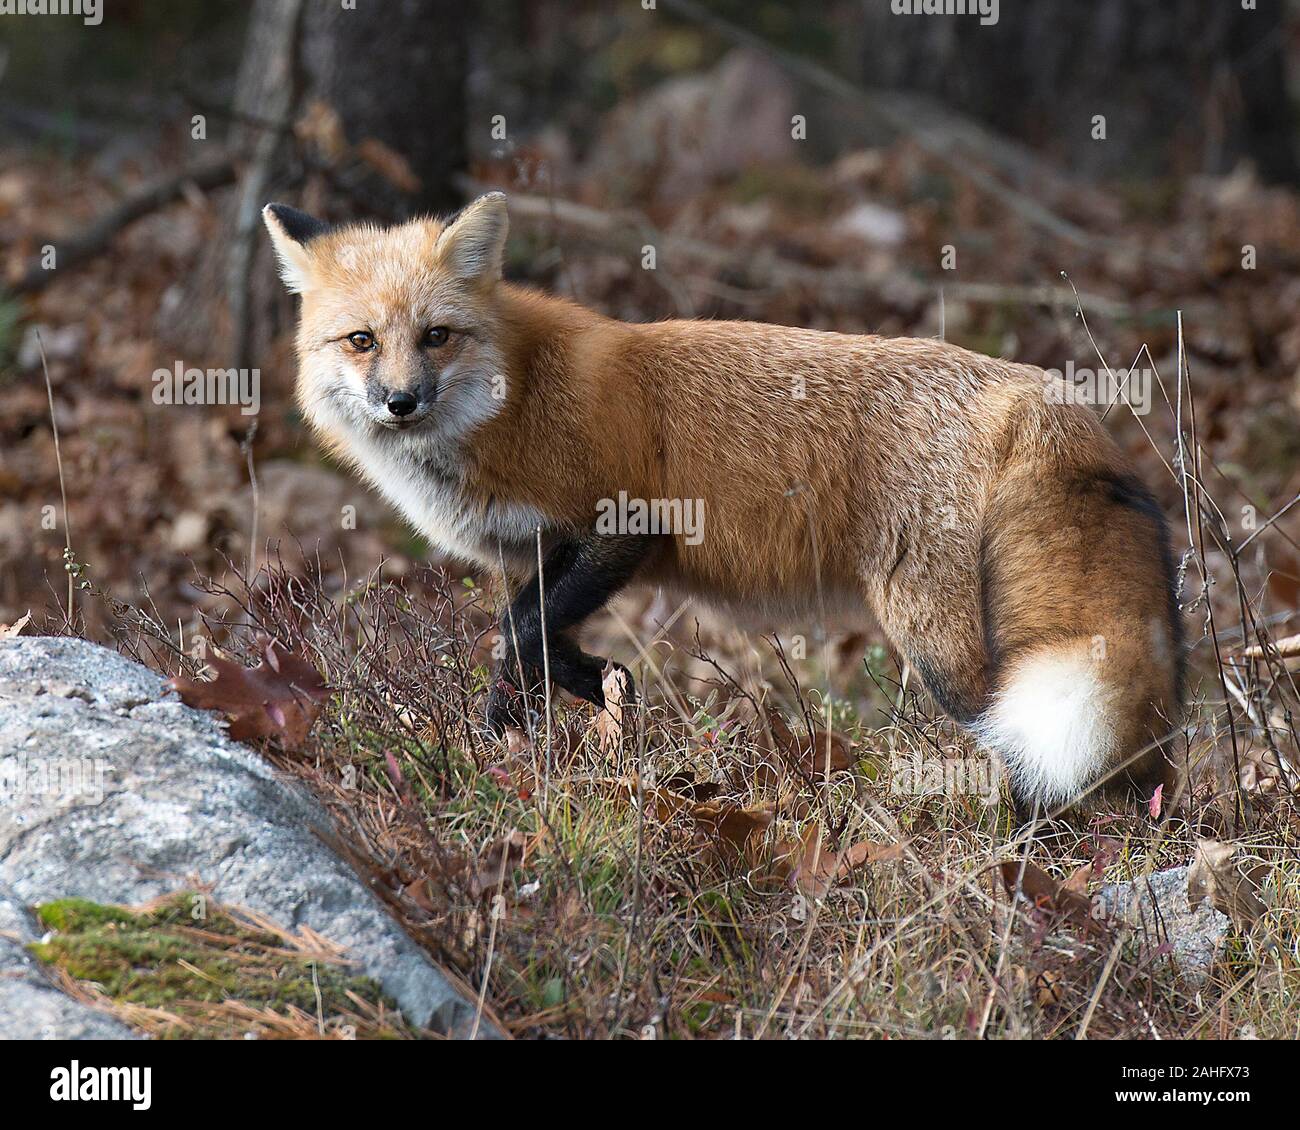 Fox Red Fox animale della foresta godendo le sue circostanti e l'ambiente mentre esponendo il suo corpo, Testa, occhi, orecchie, naso, zampe, coda Foto Stock